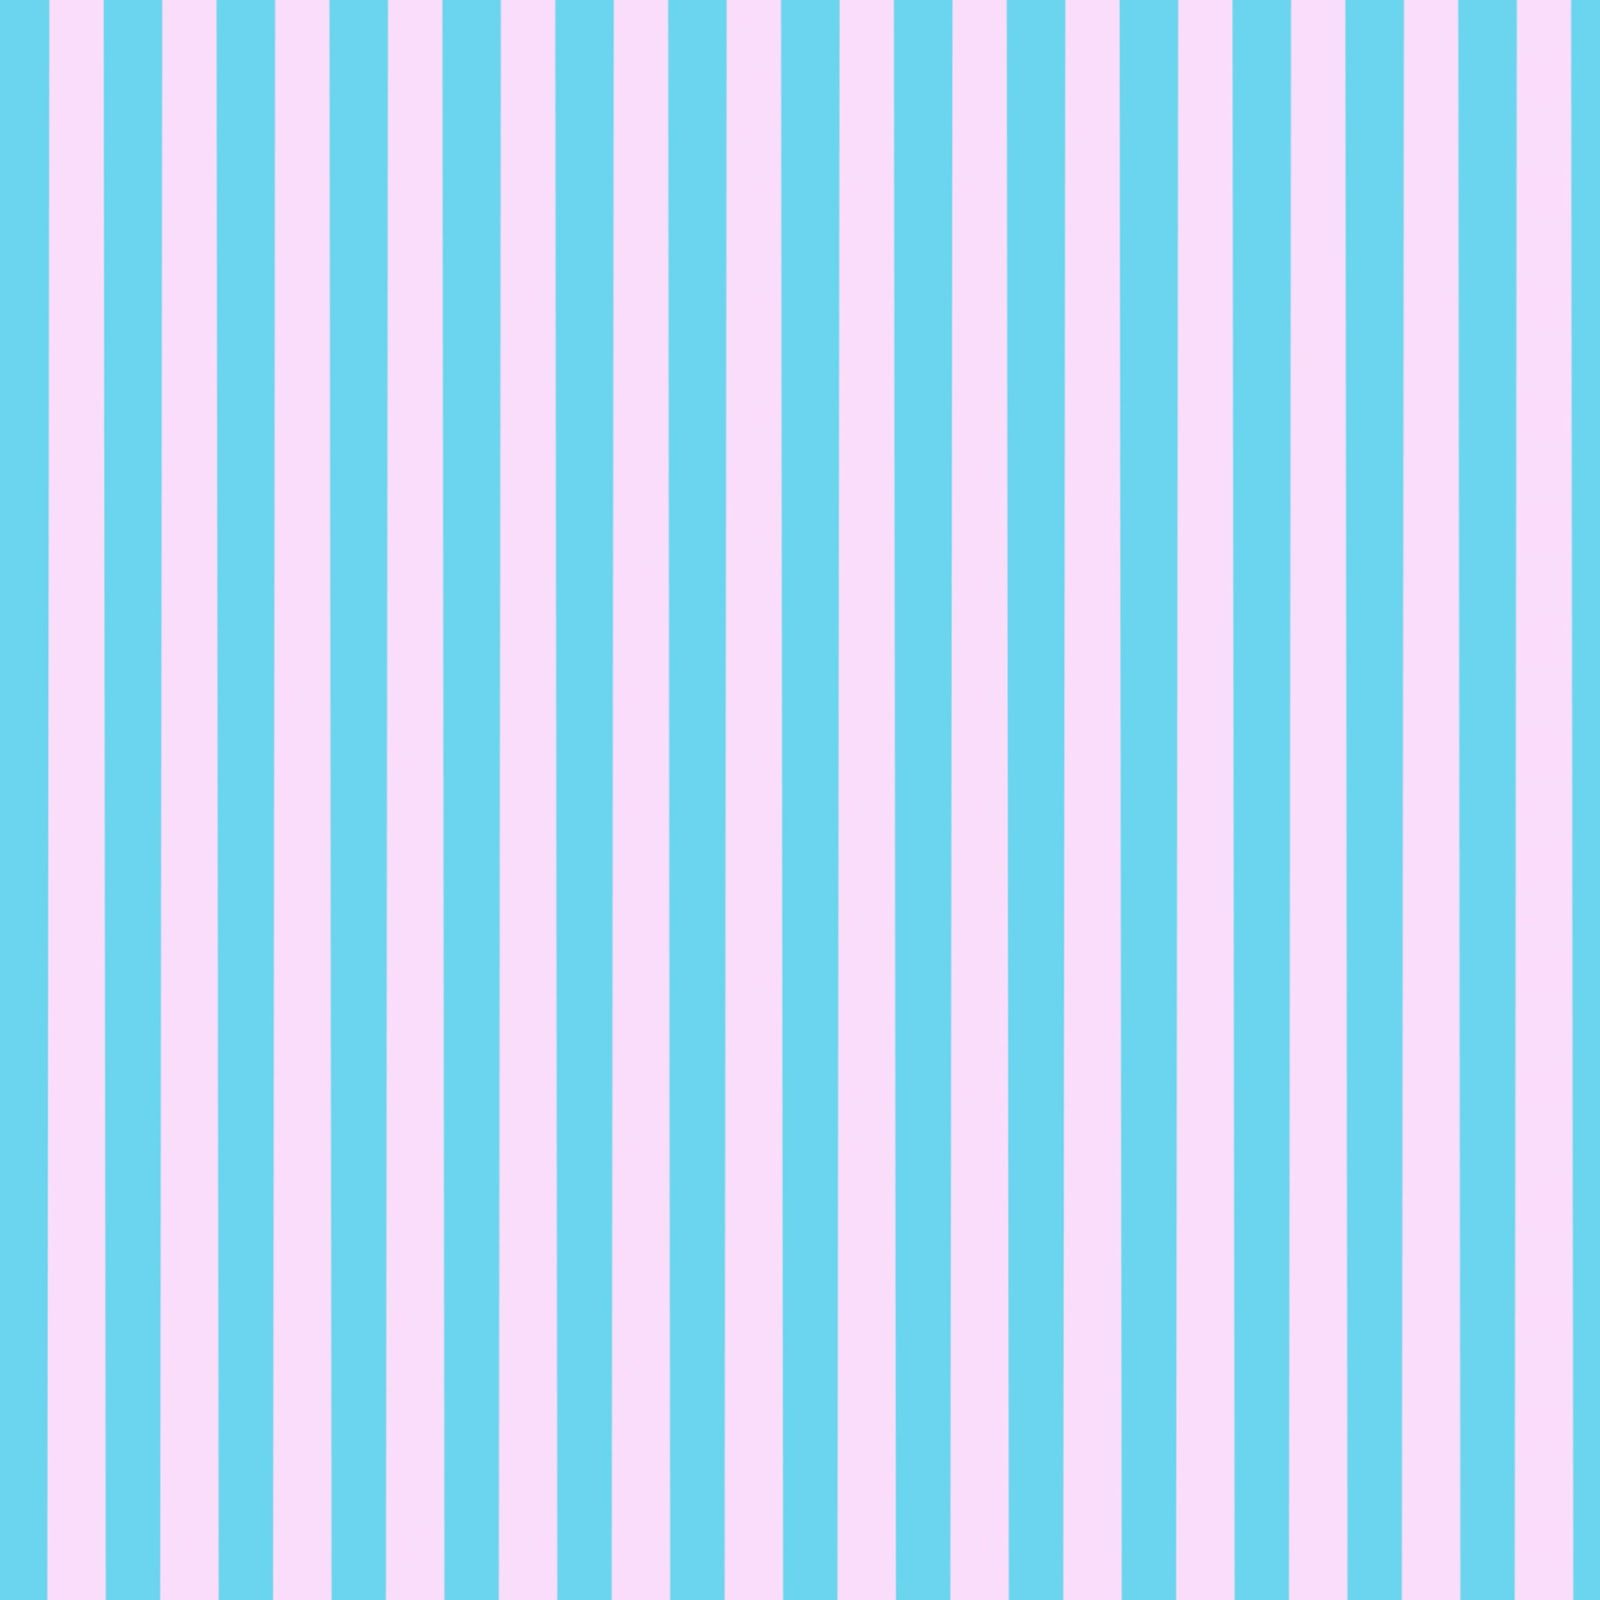 cute blue striped background